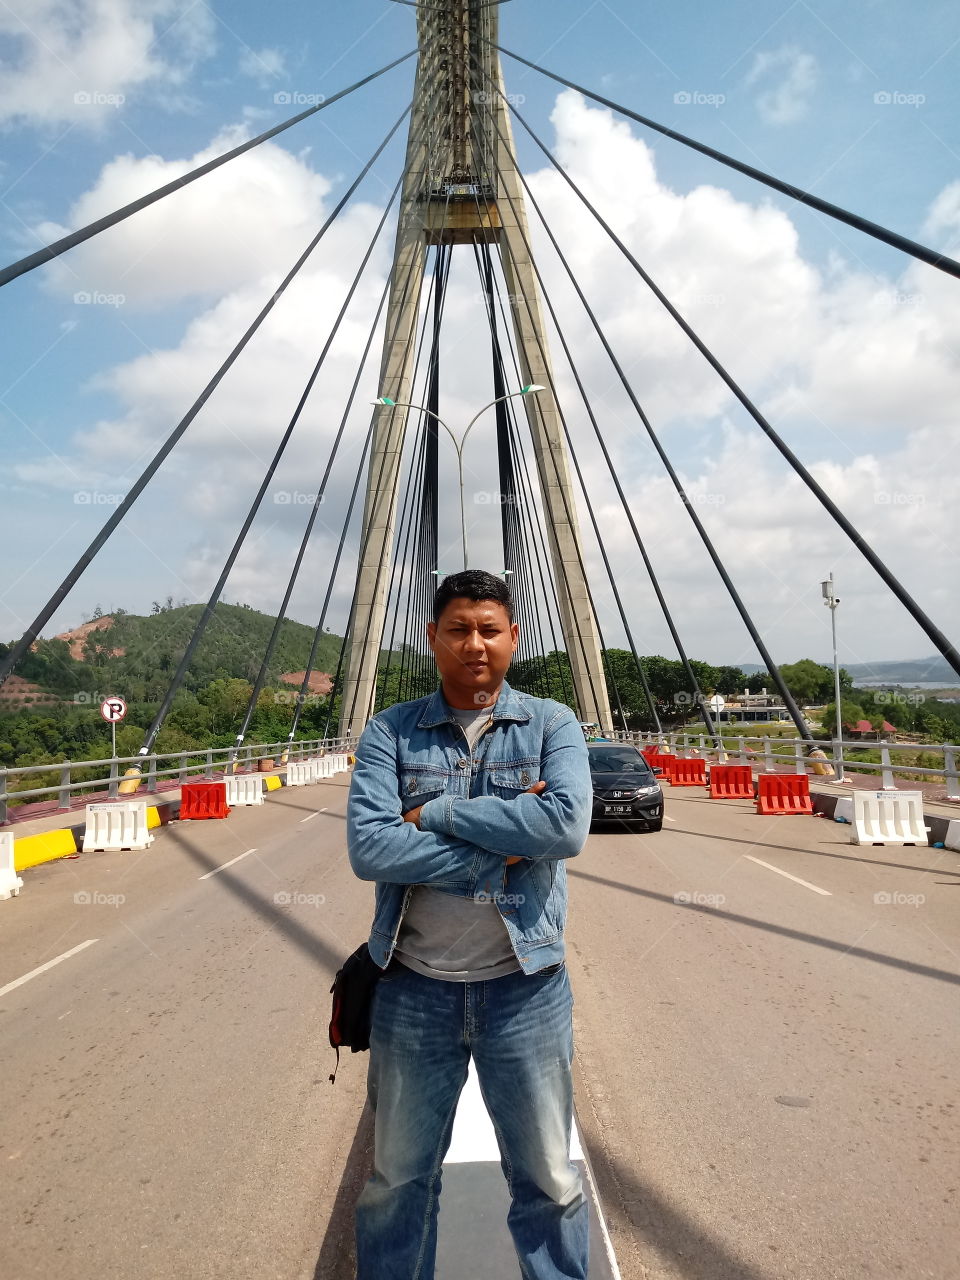 bridge in barelang batam city